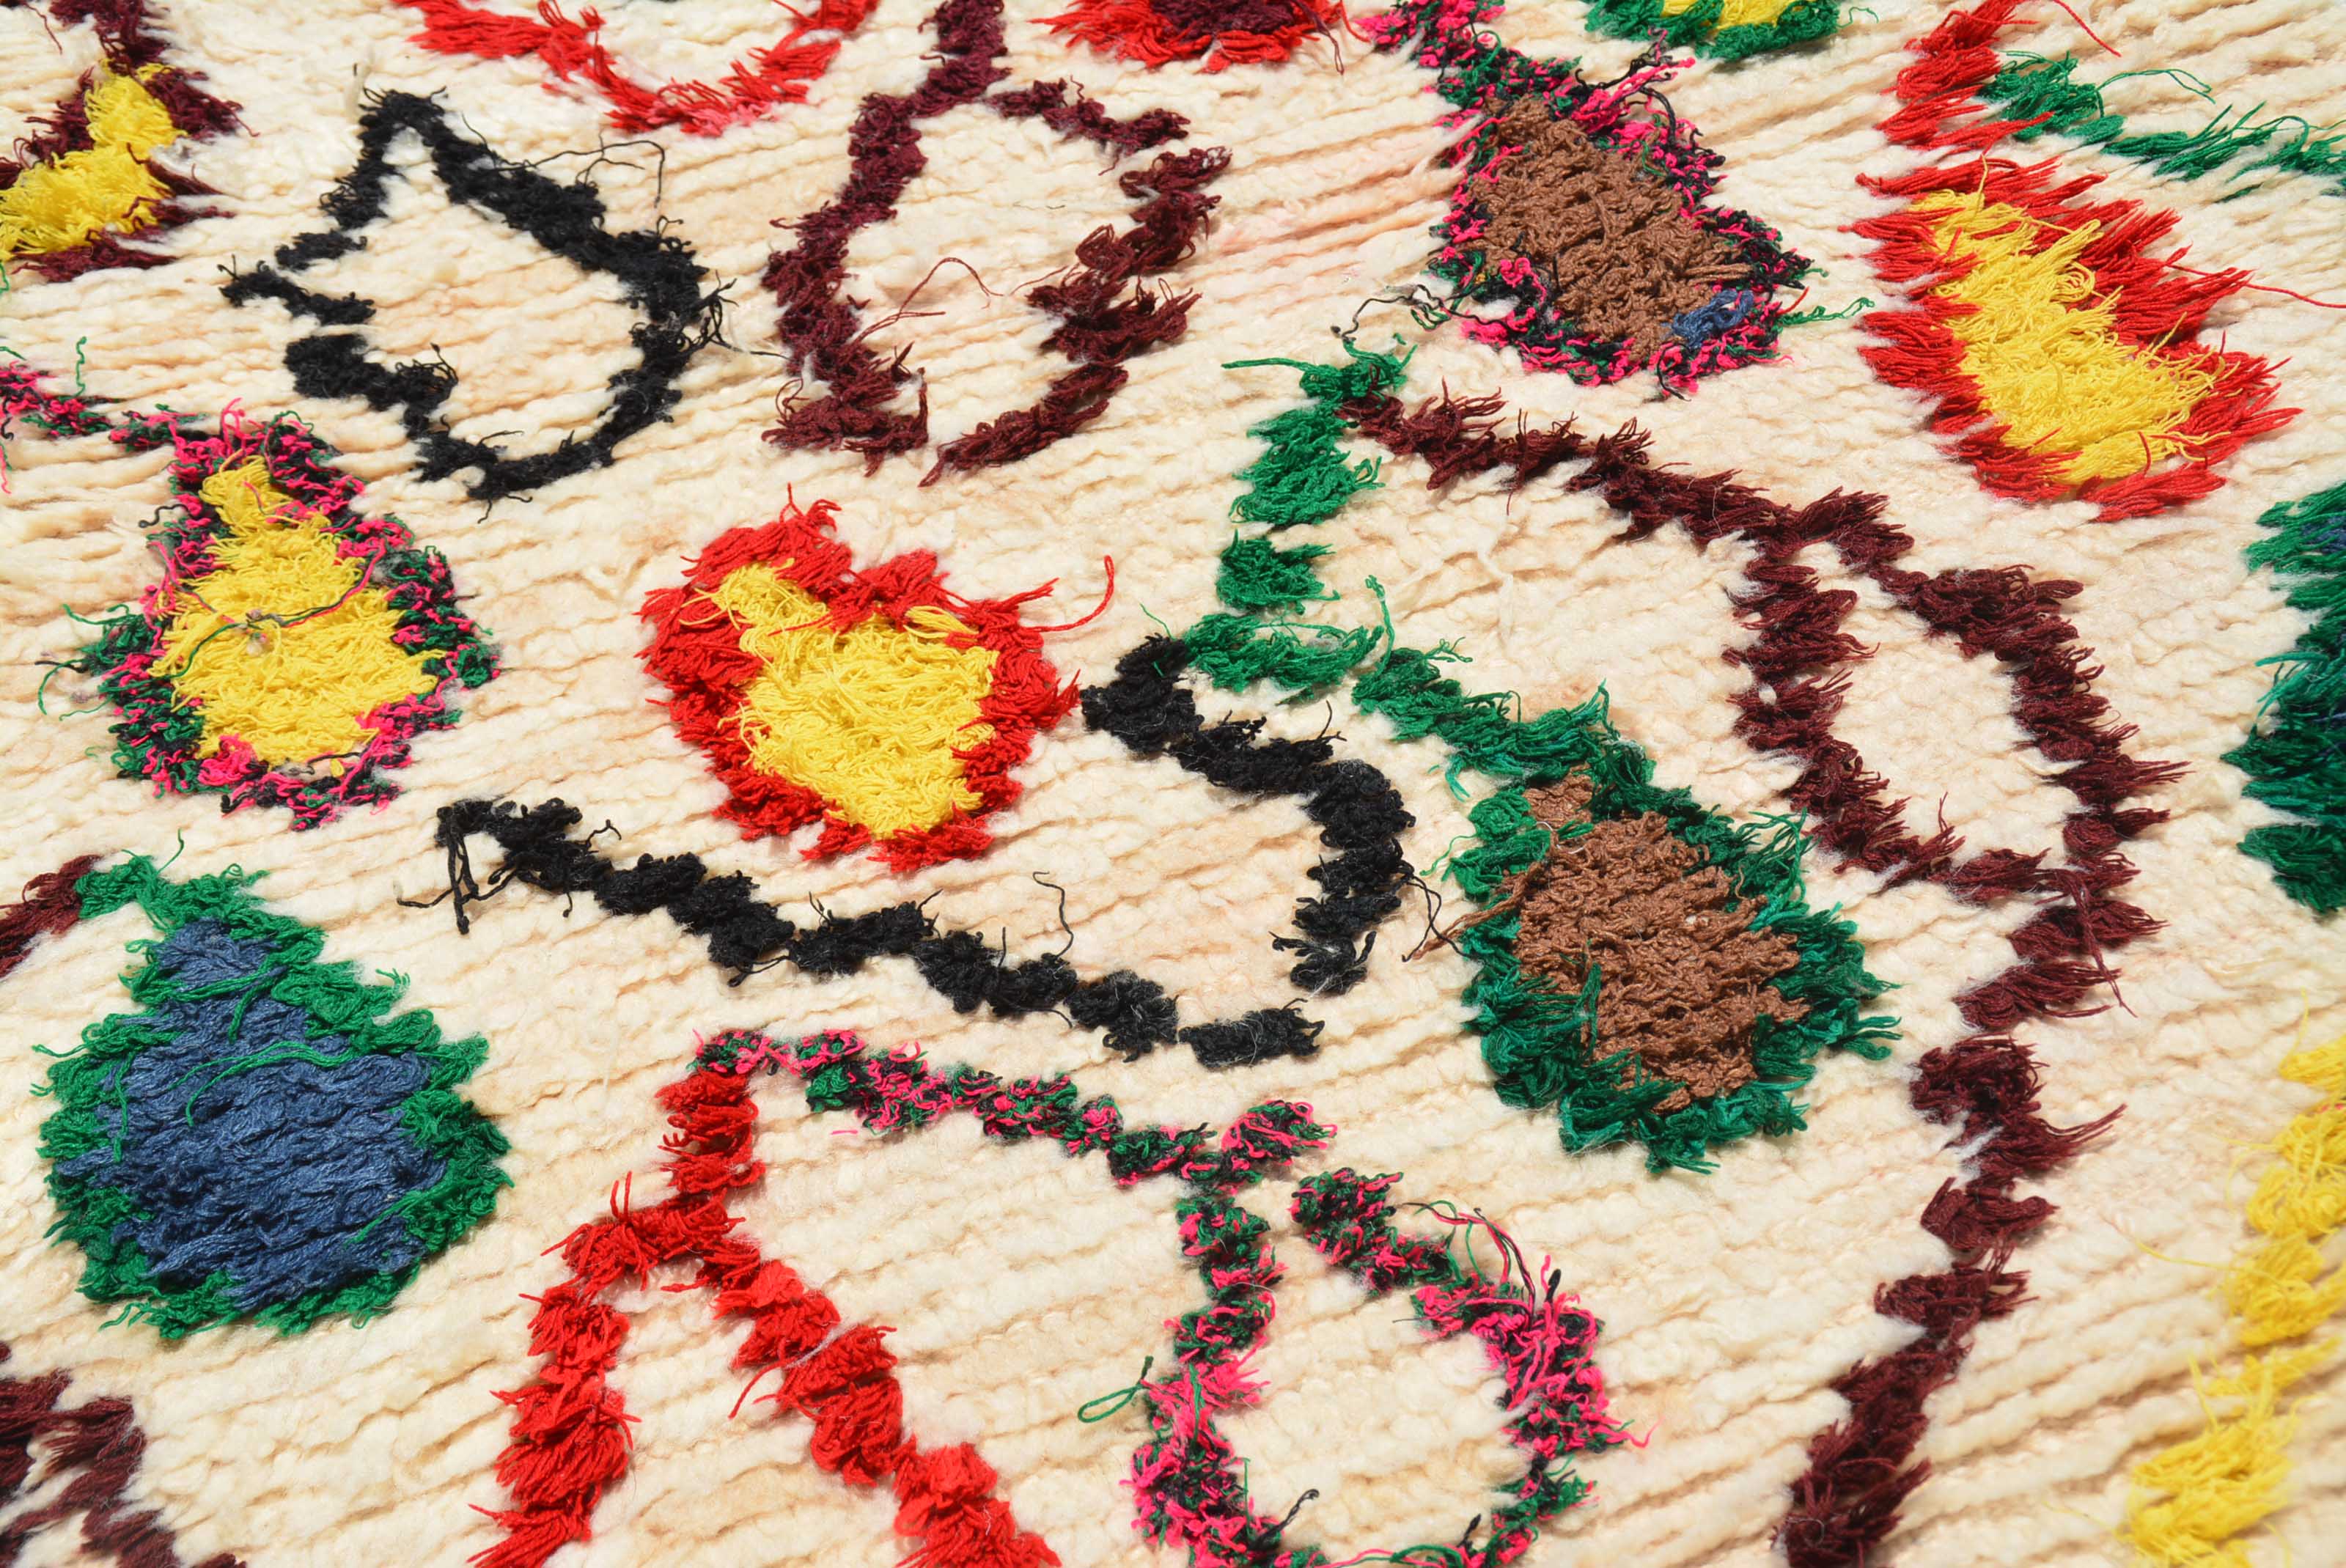 Buy Modern Handmade Moroccan Rugs, Vintage Latch Hook Rug Kits